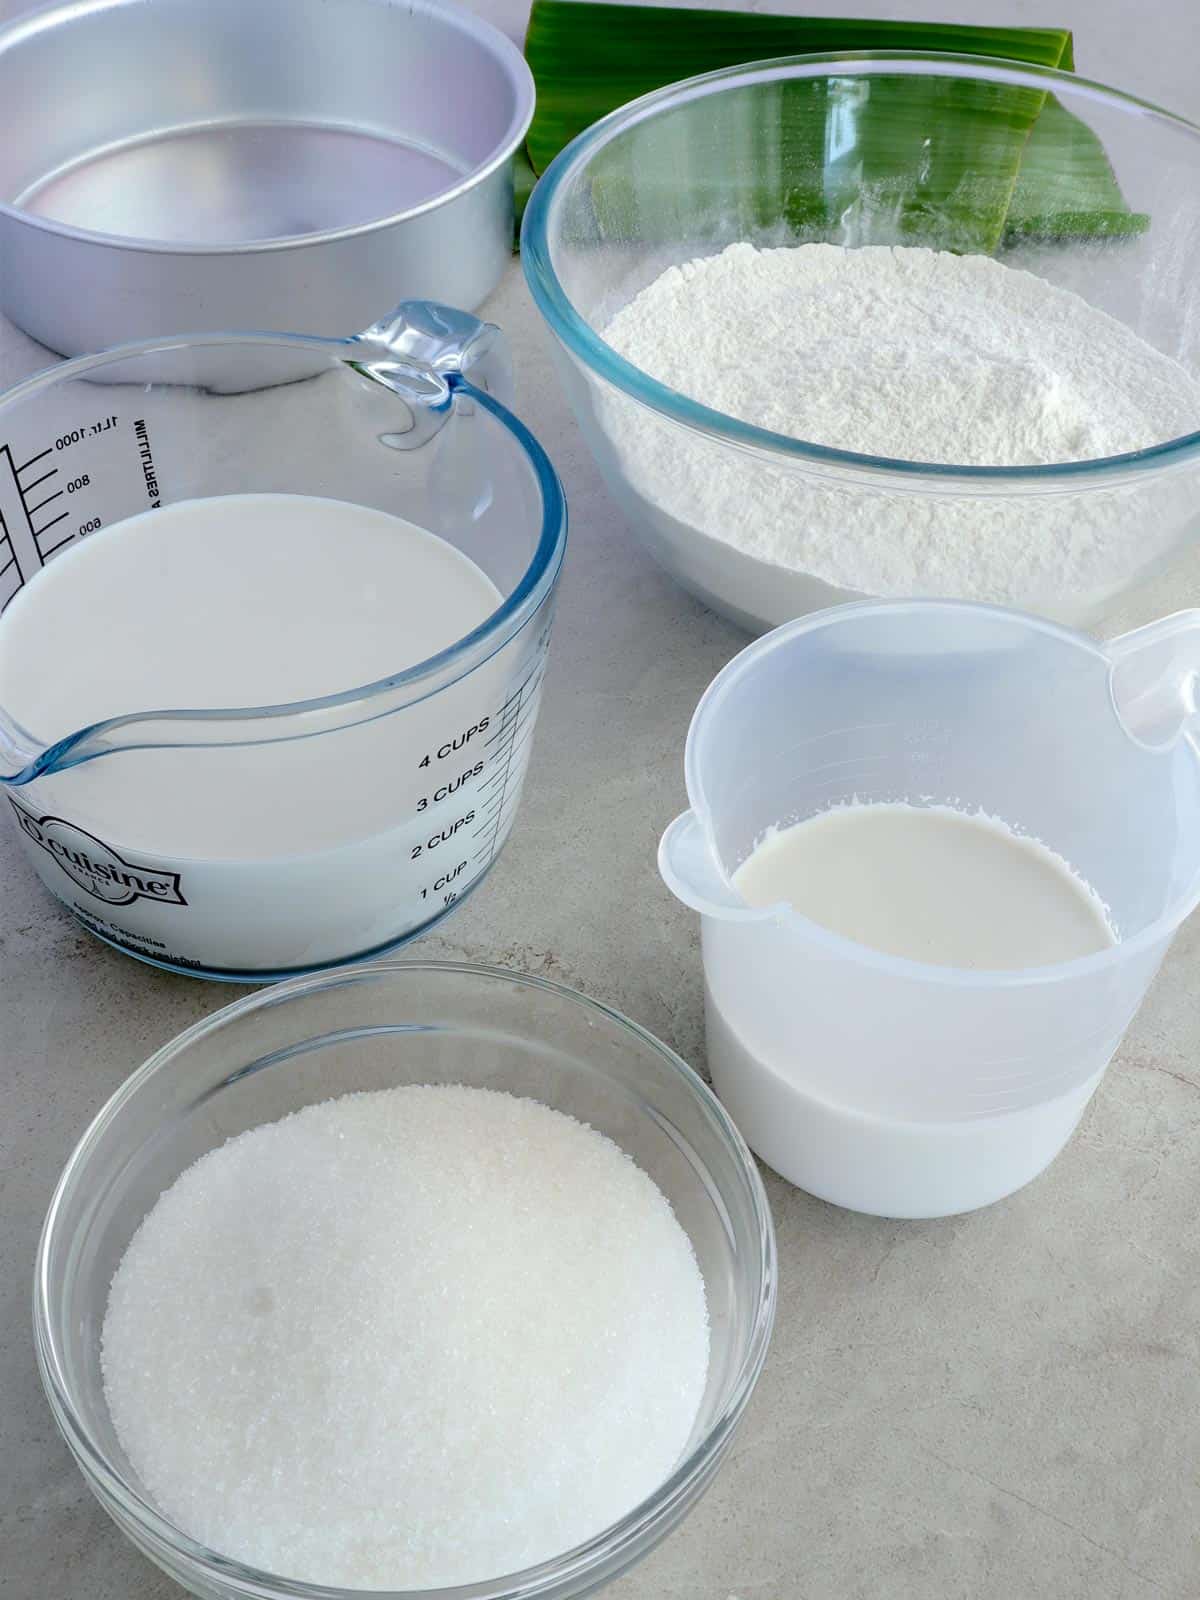 glutinous rice flour, sugar, coconut milk, coconut cream in bowls